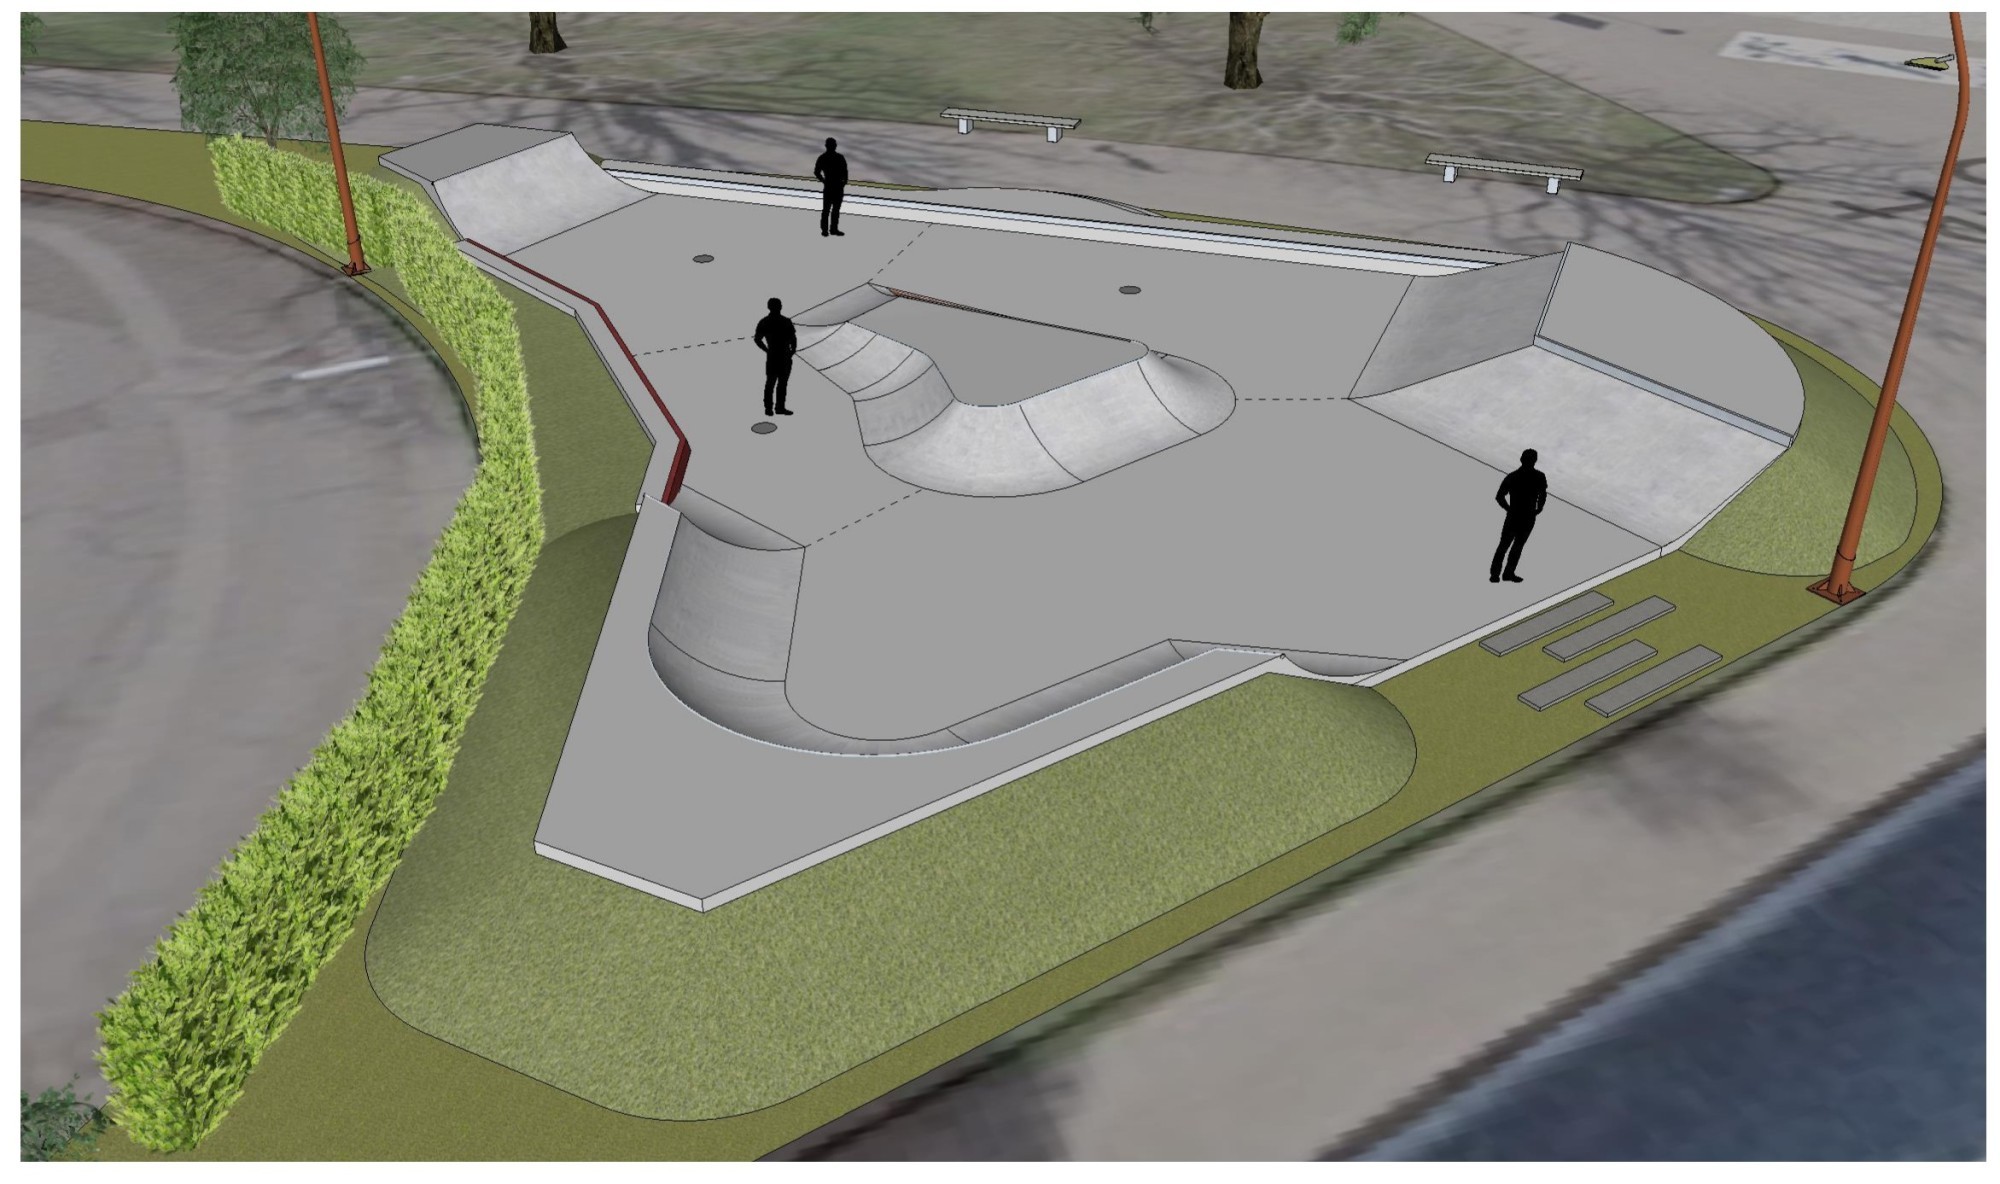 Image de synthèse du futur skatepark de la Ville de Vevey dédié aux amateurs de sports de glisse.